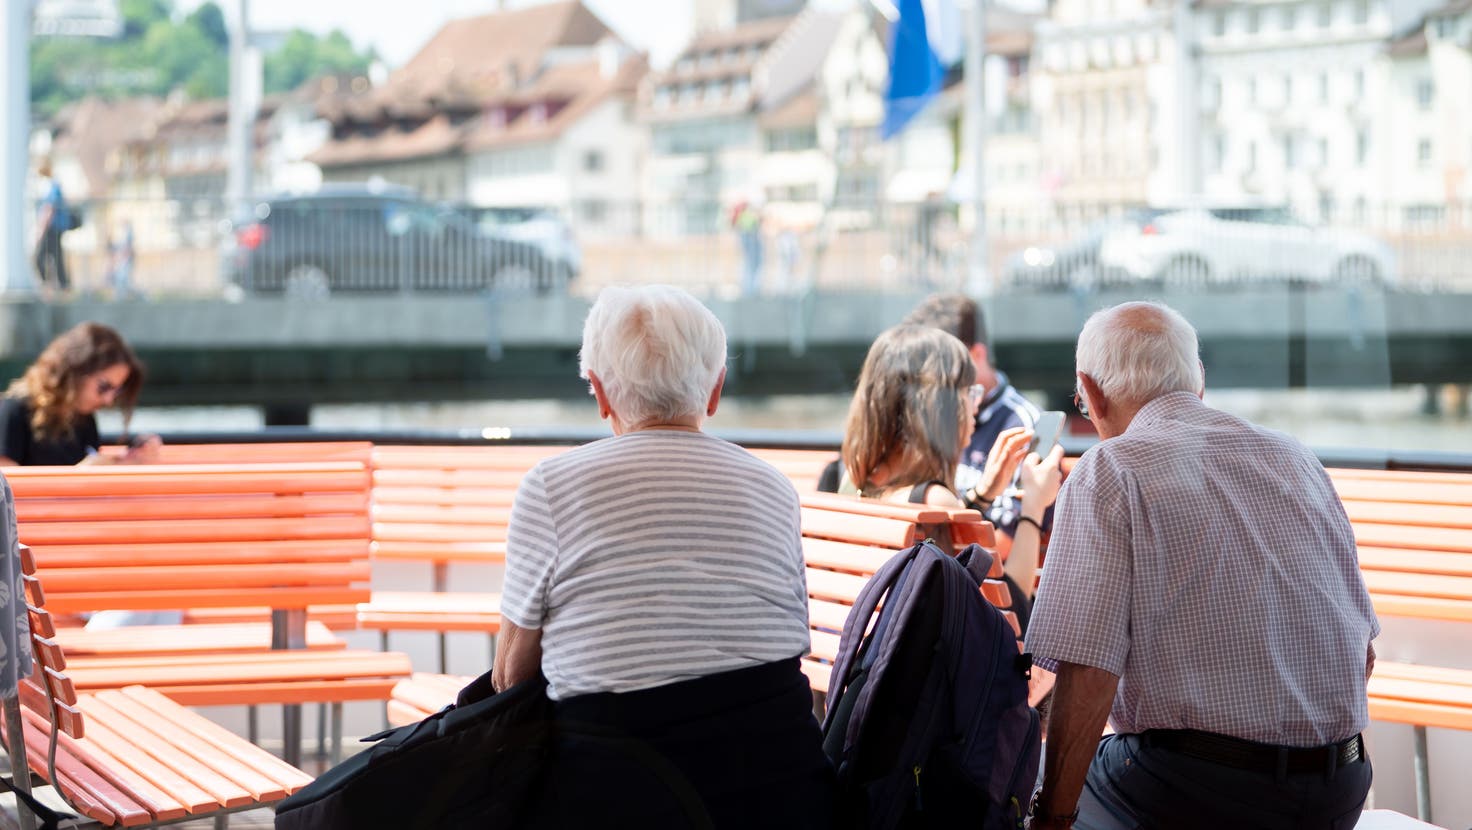 Für Ausflüge ist der Kanton Luzern bei Pensionierten schon attraktiv. Das soll auch für das Leben hier bei einem Kapitalbezug von Rente und Vorsorge gelten. (Symbolbild: Nadia Schärli)